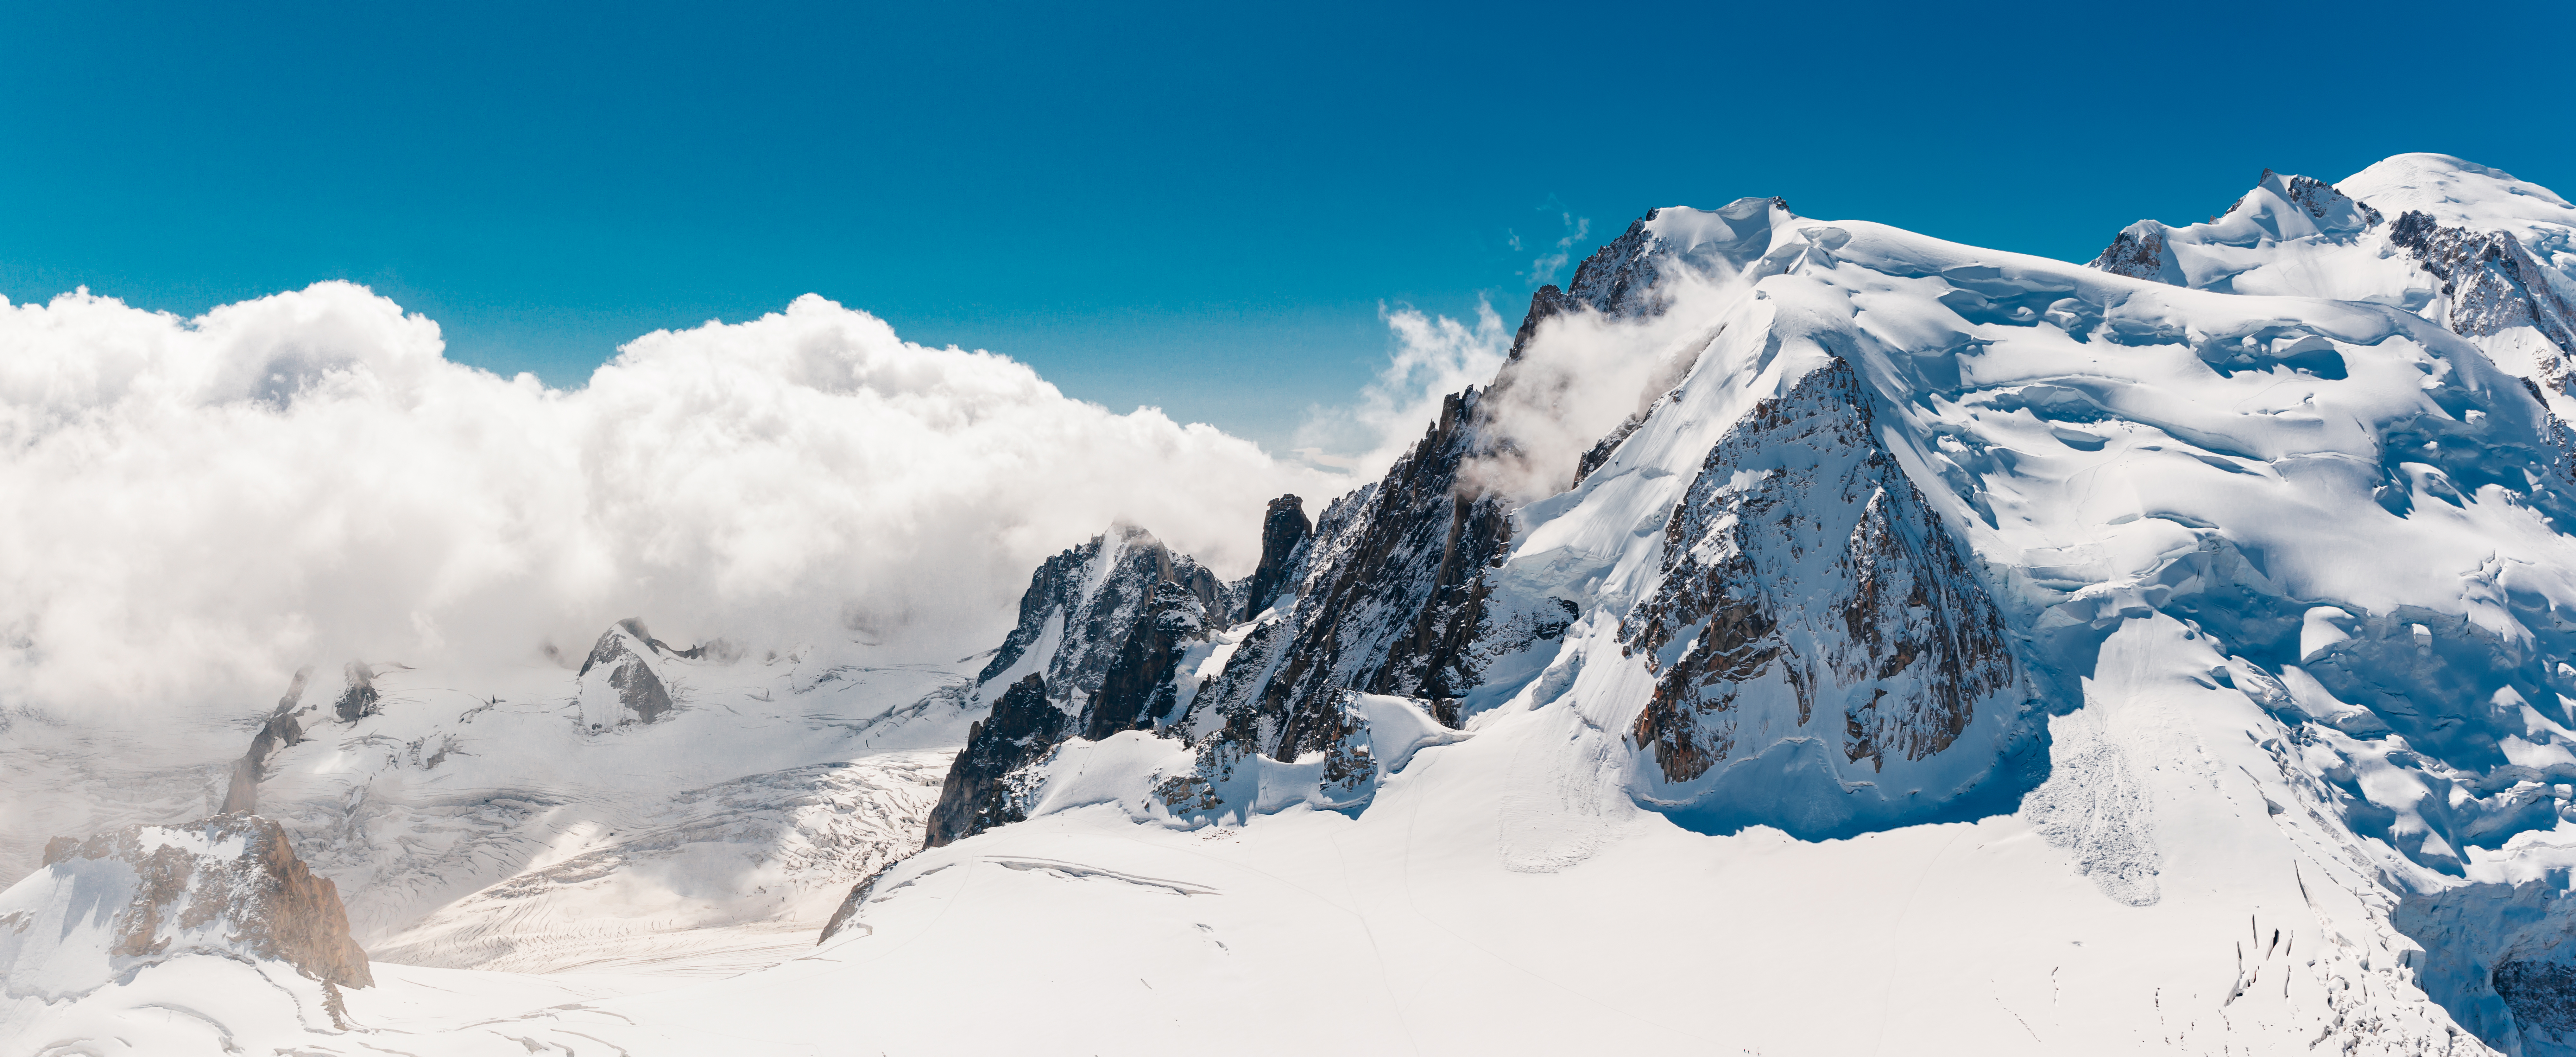 Der schneebedeckte Gipfel des Mont Blanc